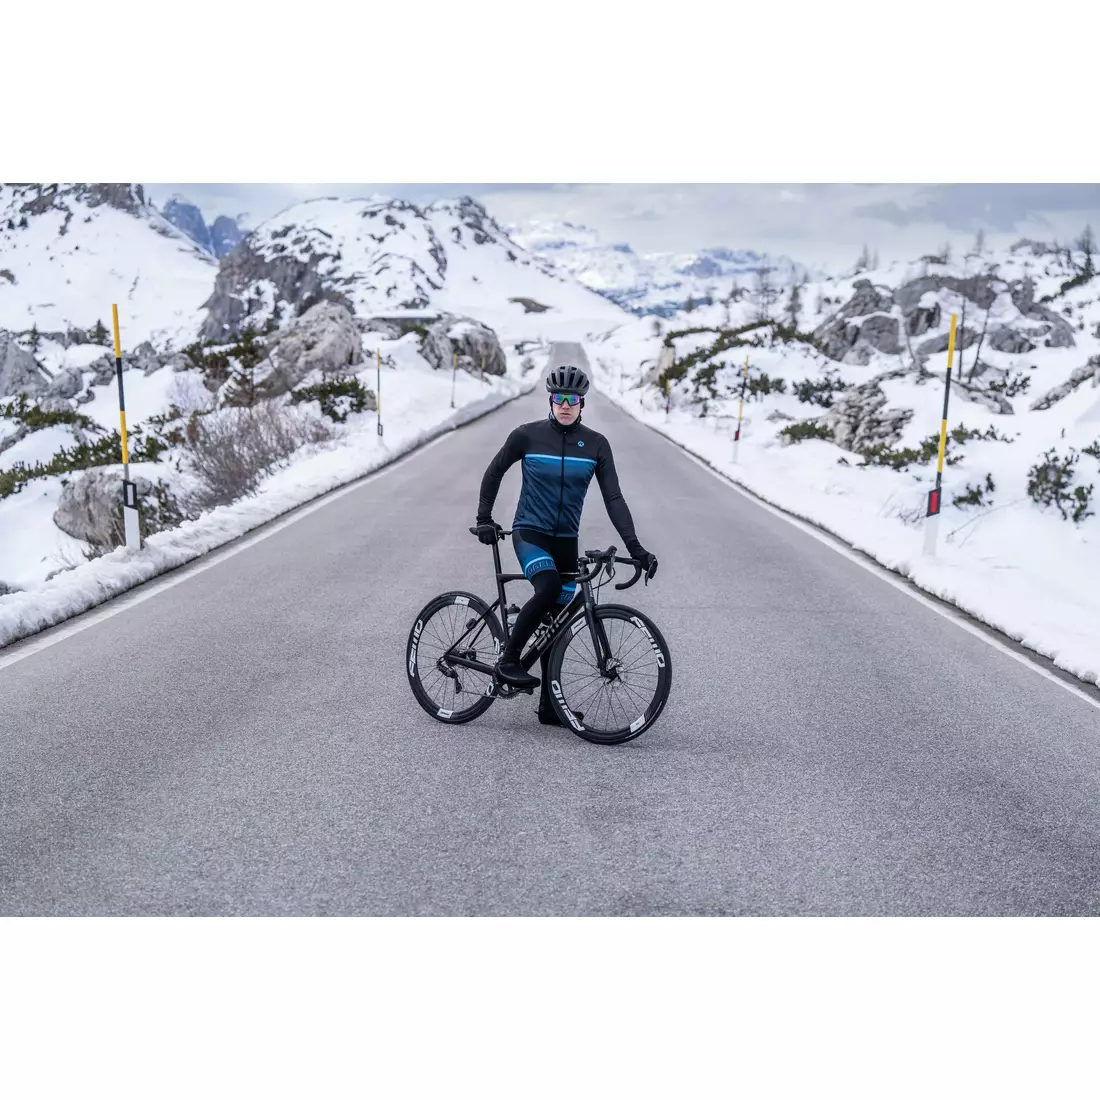 Geaca de iarna pentru ciclism Rogelli HERO II, neagra si albastra